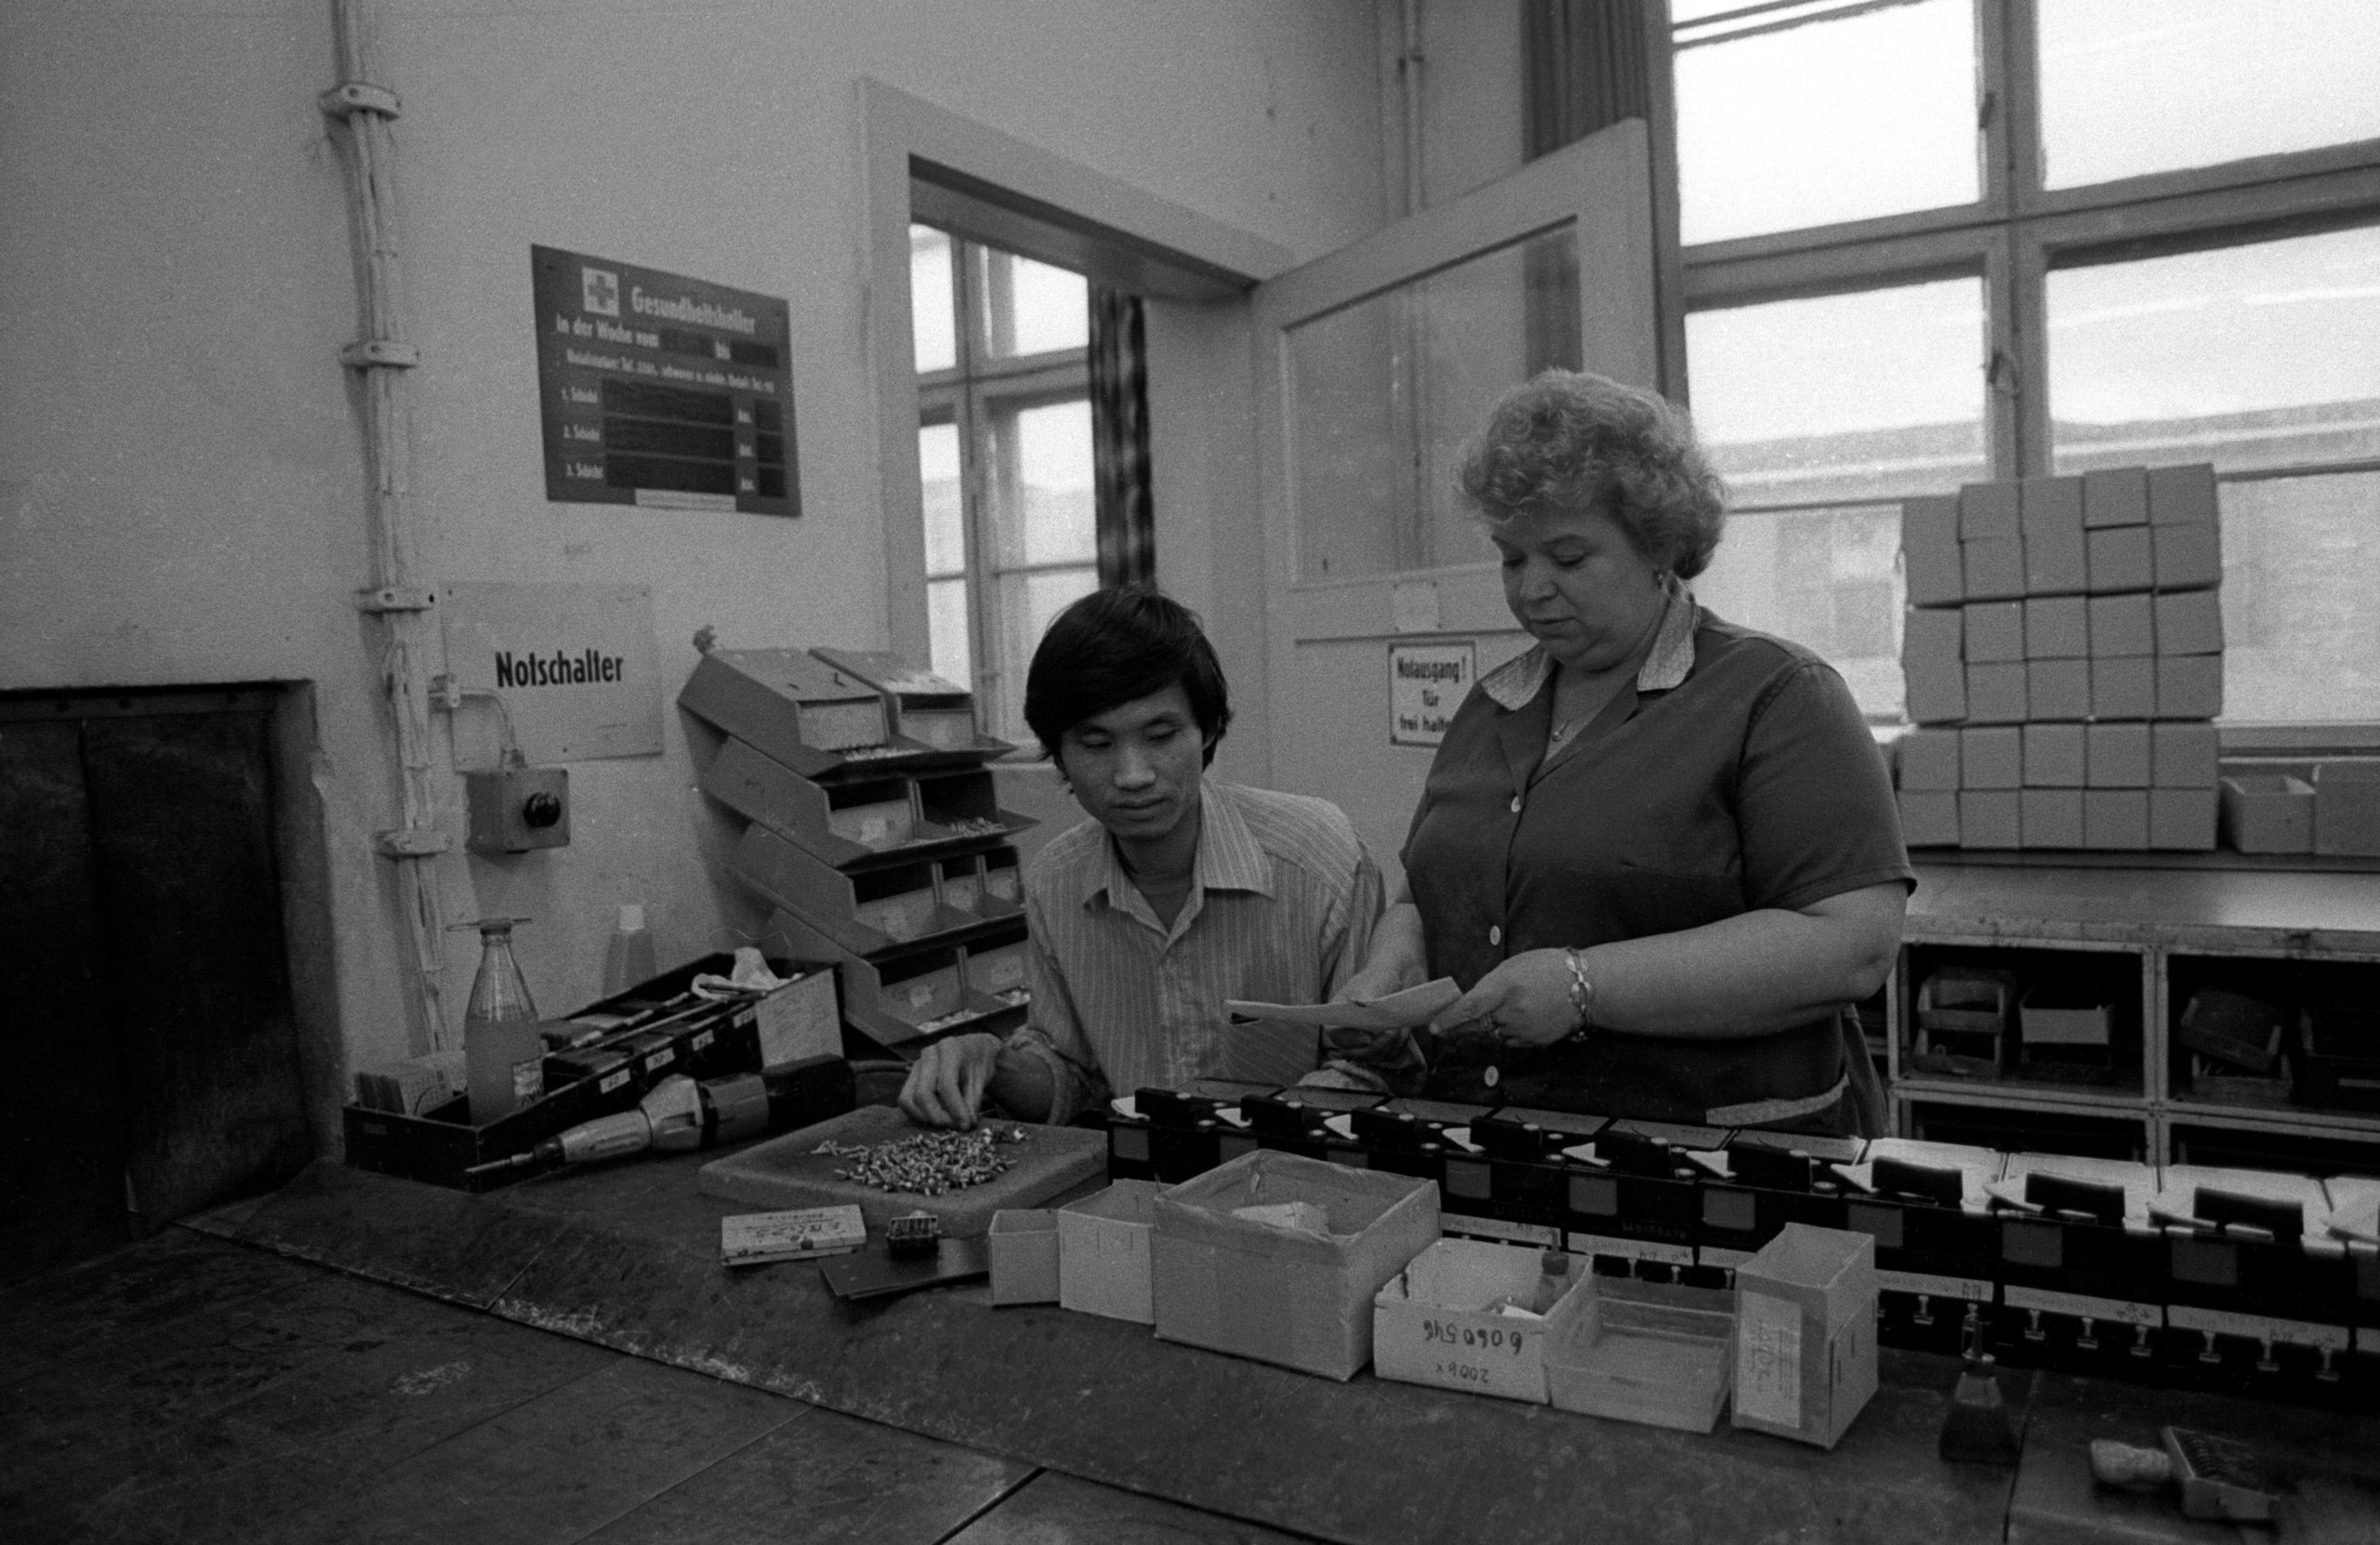 Handwerk in Berlin: Vietnamesische Vertragsarbeiter in den Werkshallen eines Volkseigenen Betriebes in Ost-Berlin, 1990. Foto: Imago/Werner Schulze